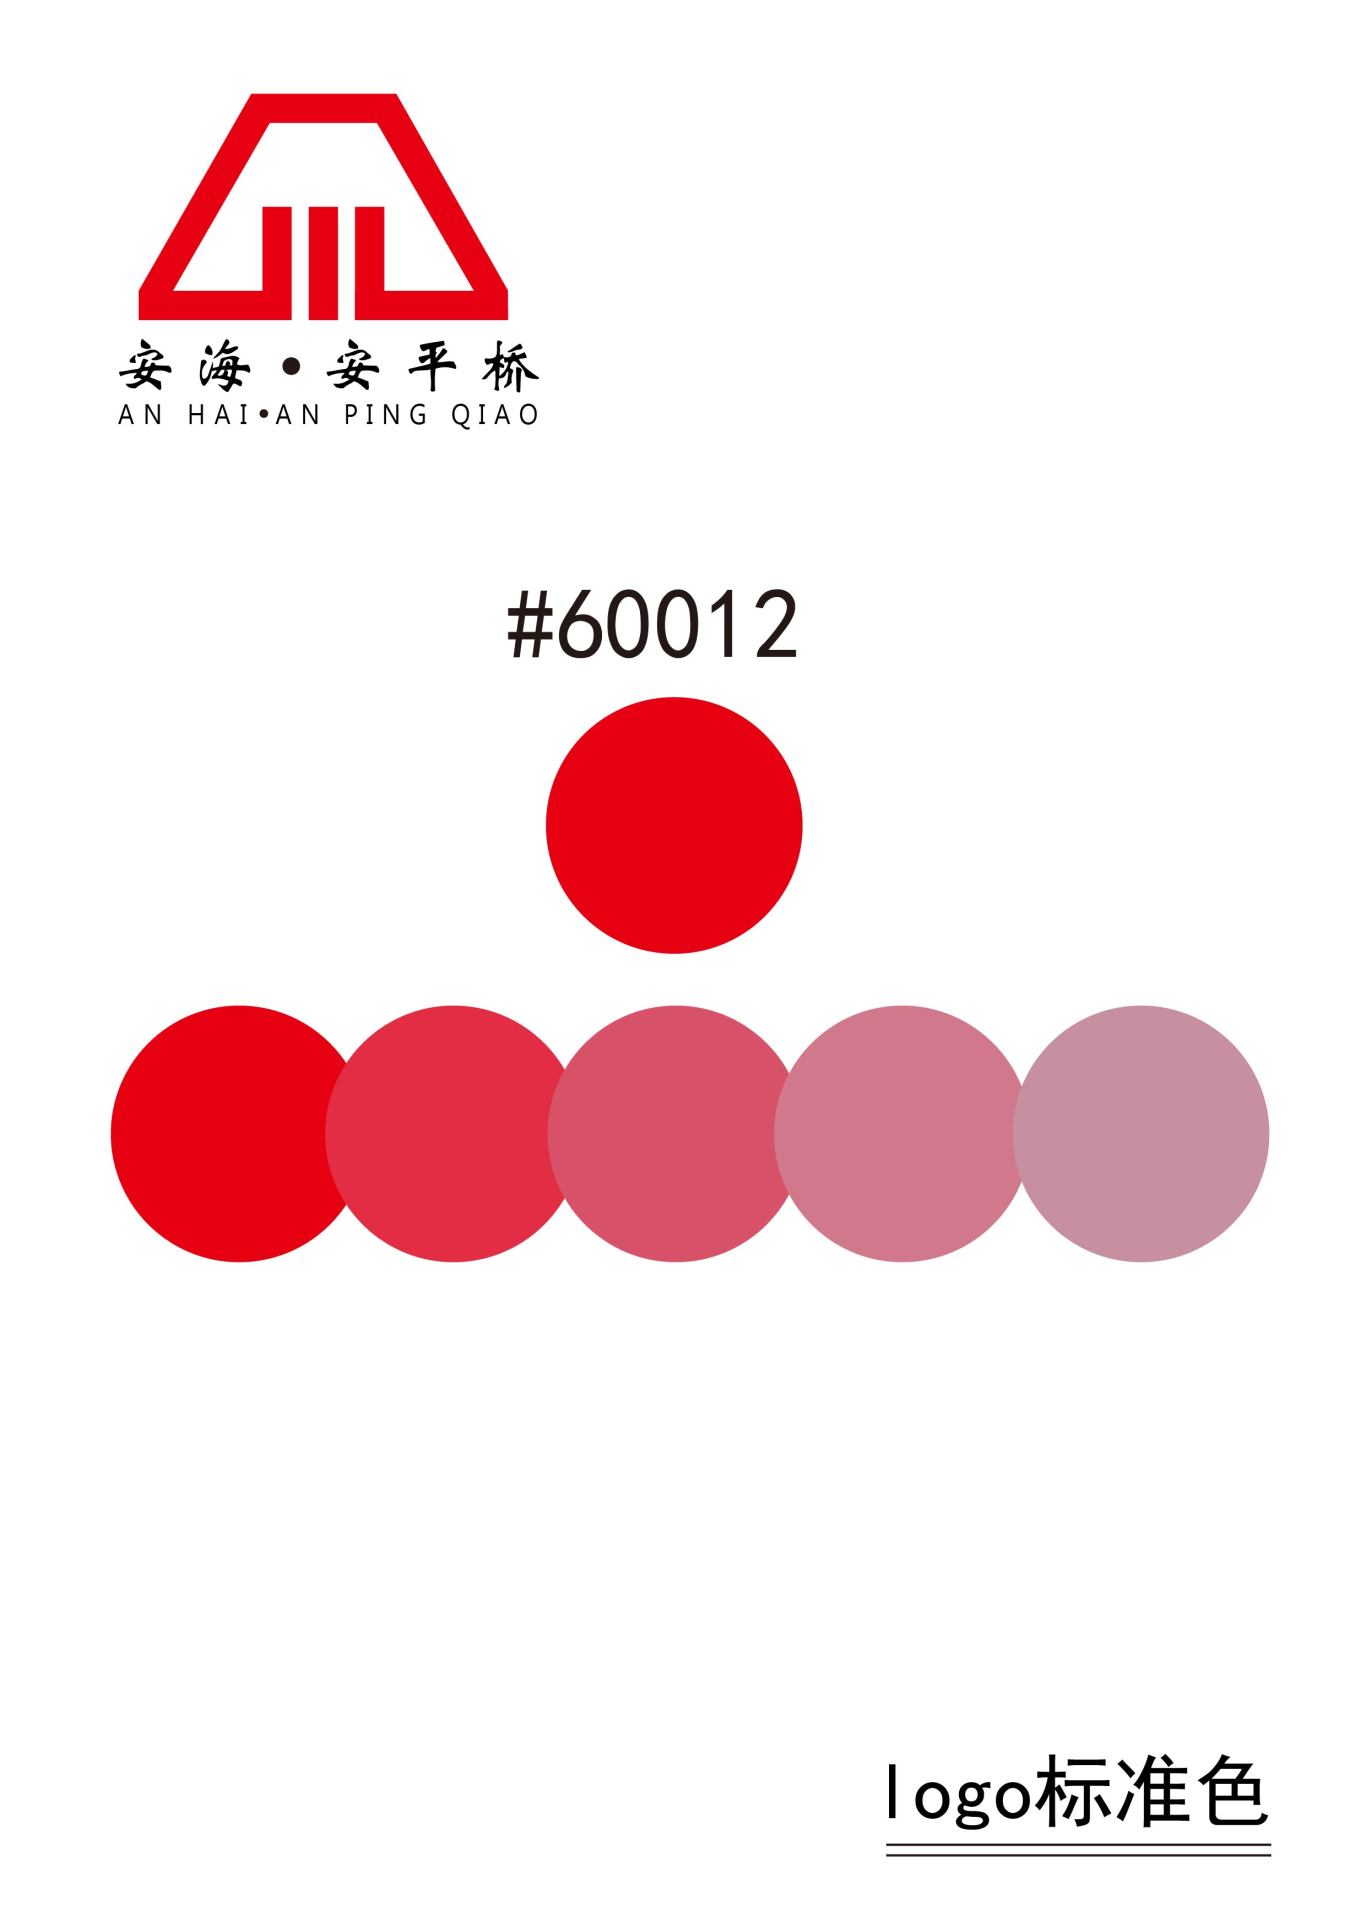 安平桥景区logo设计图1